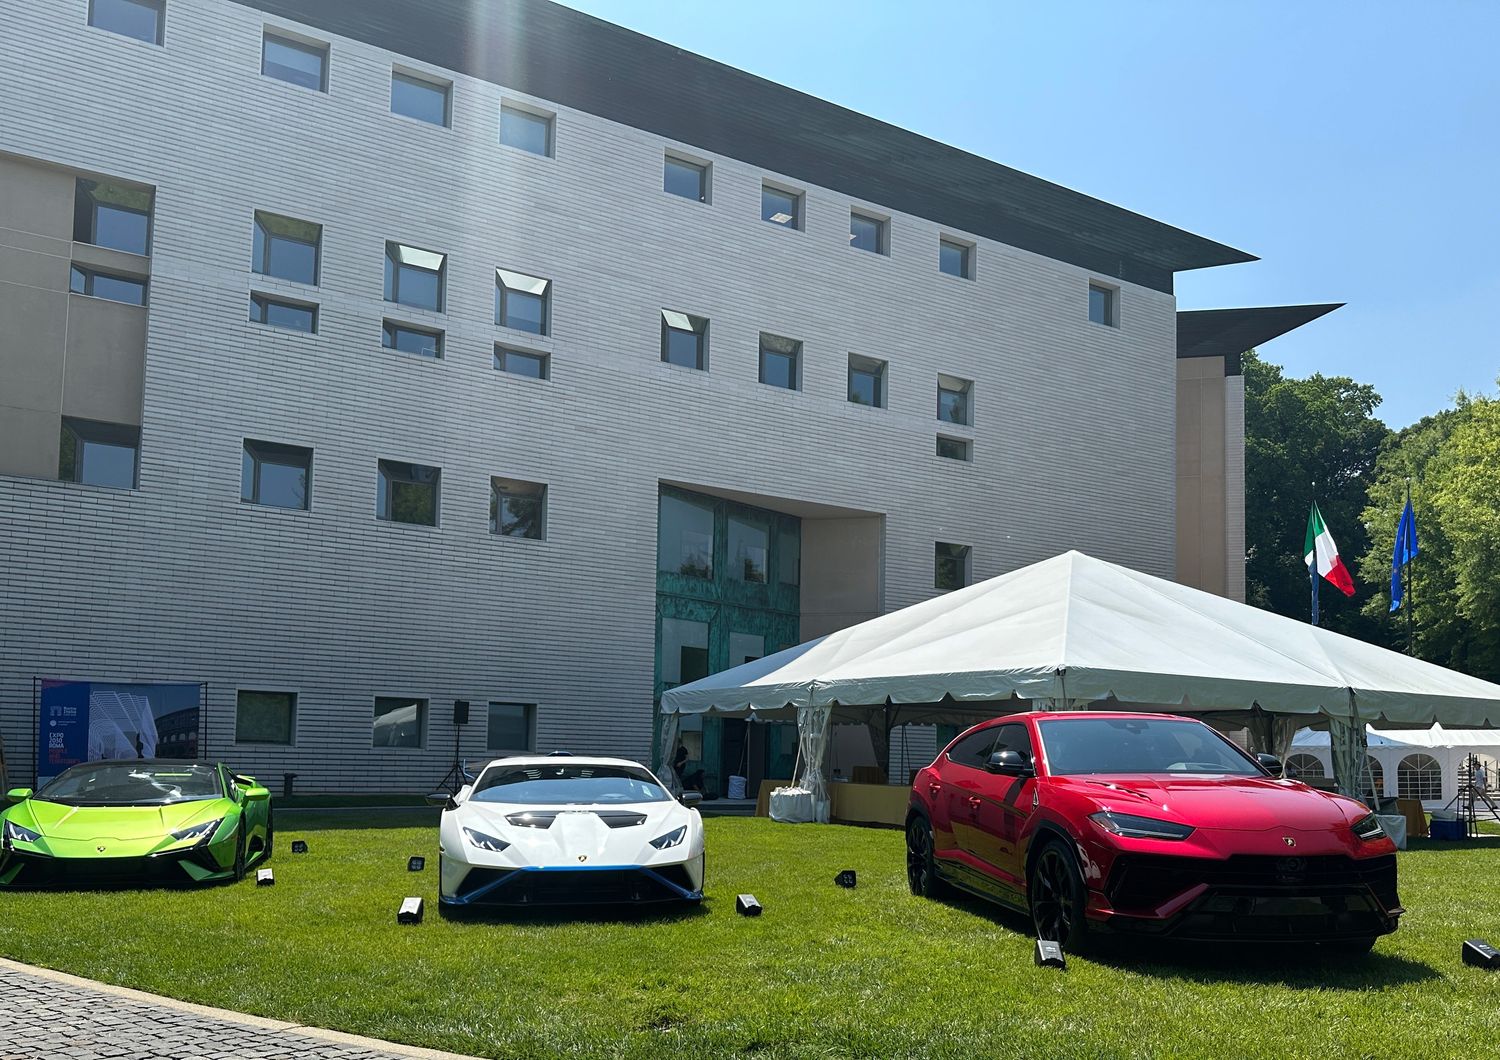 Le Lamborghini esposte nel giardino dell'ambasciata d'Italia a Washington